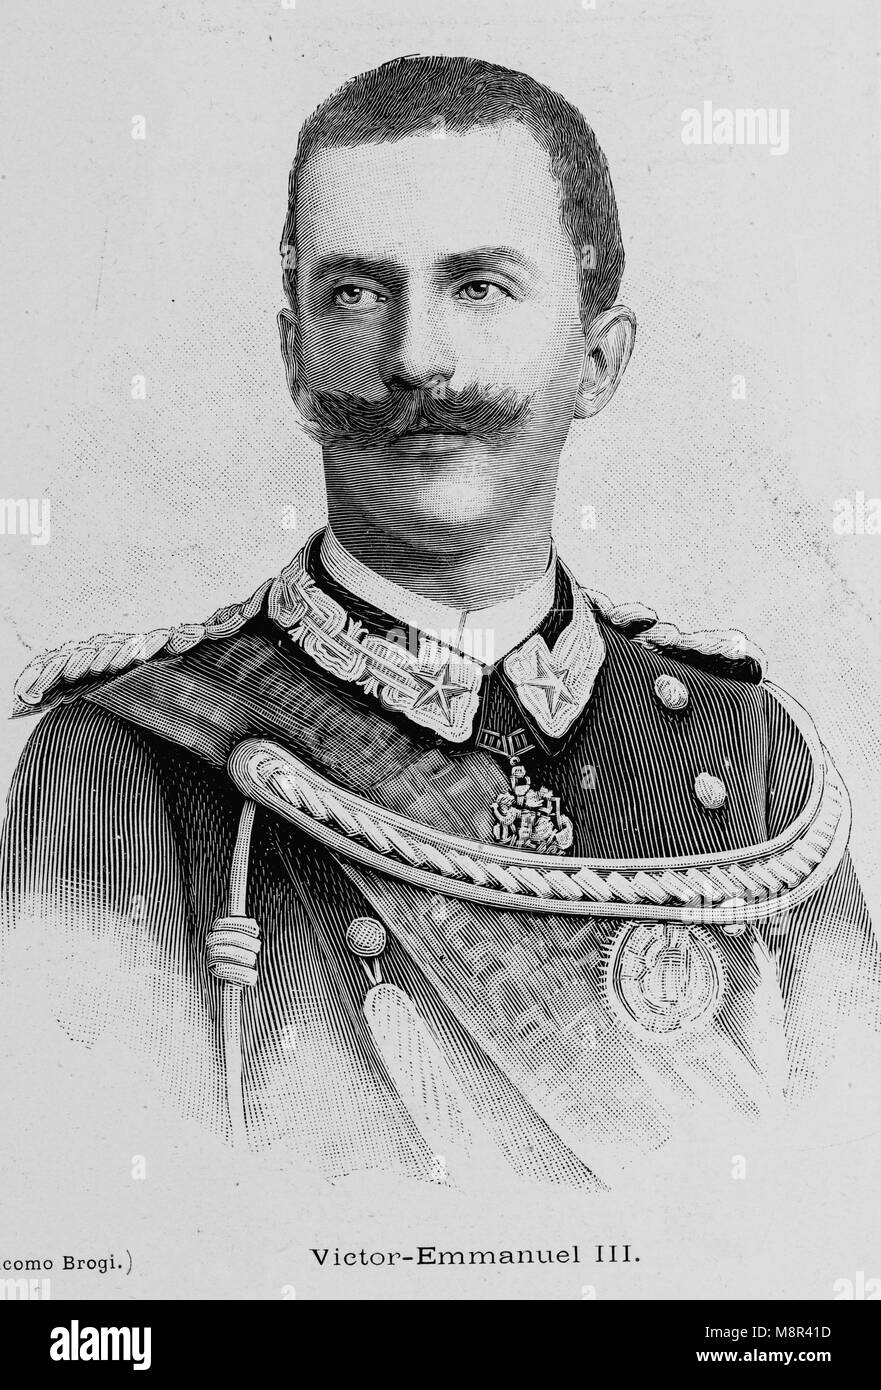 König Viktor Emanuel III. von Italien, Bild aus der Französischen Wochenzeitung l'Illustration, 4. August 1900 Stockfoto